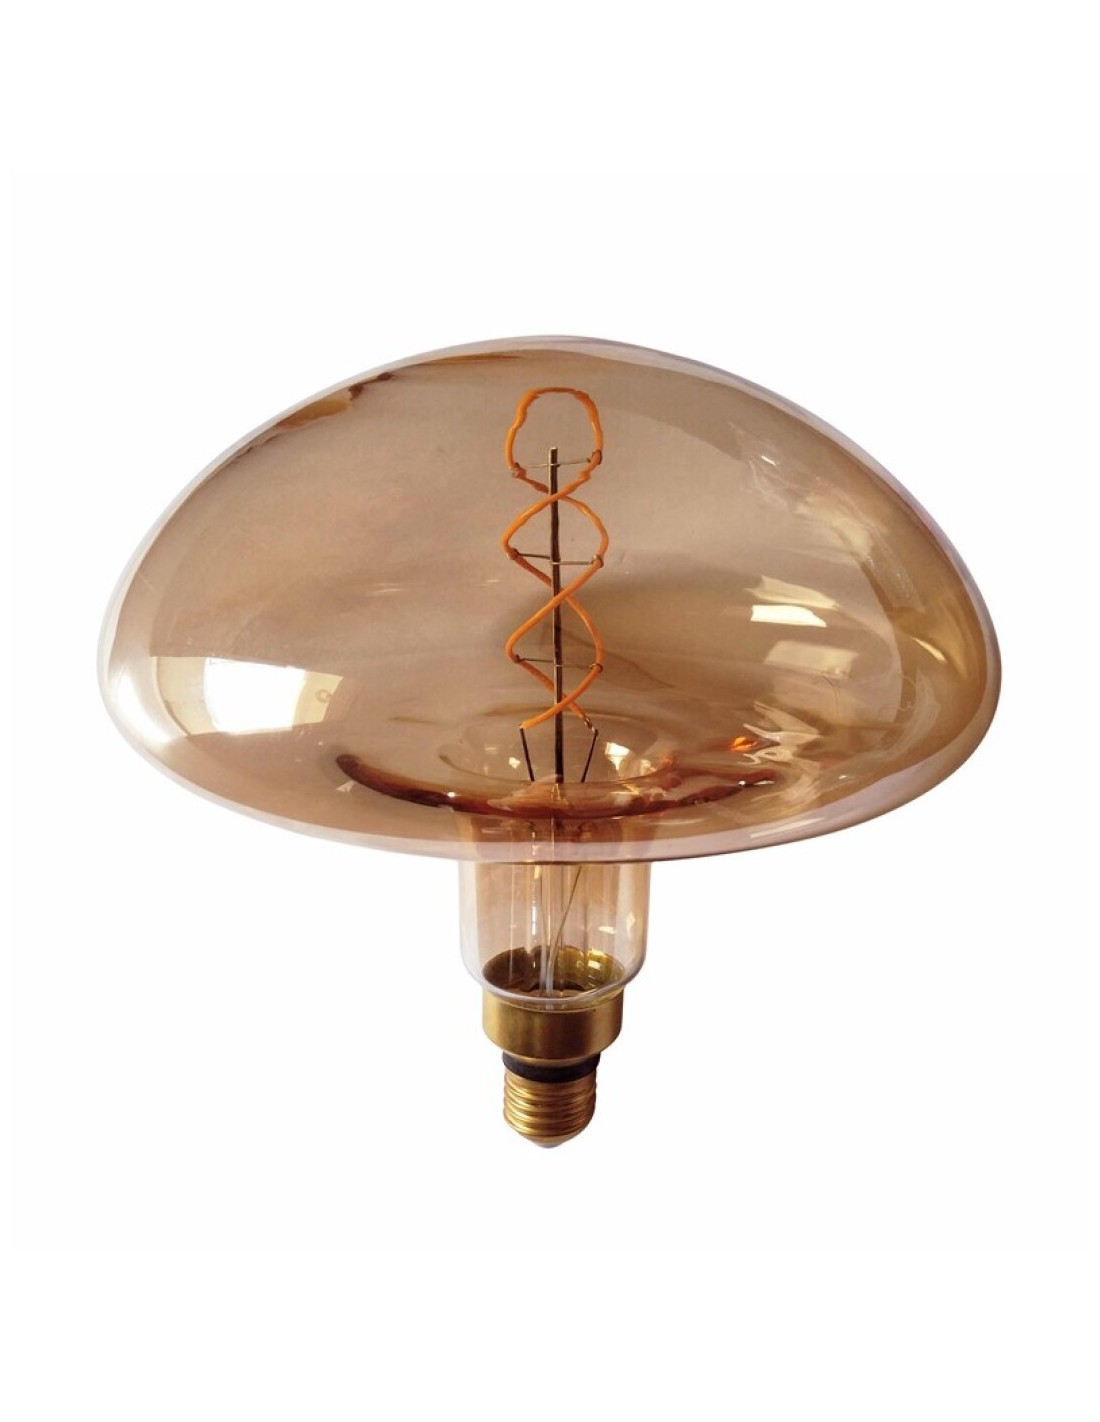 Distributie Gering Verwant LED decoratieve lamp XXL met paddenstoelfilamenten d20x30cm